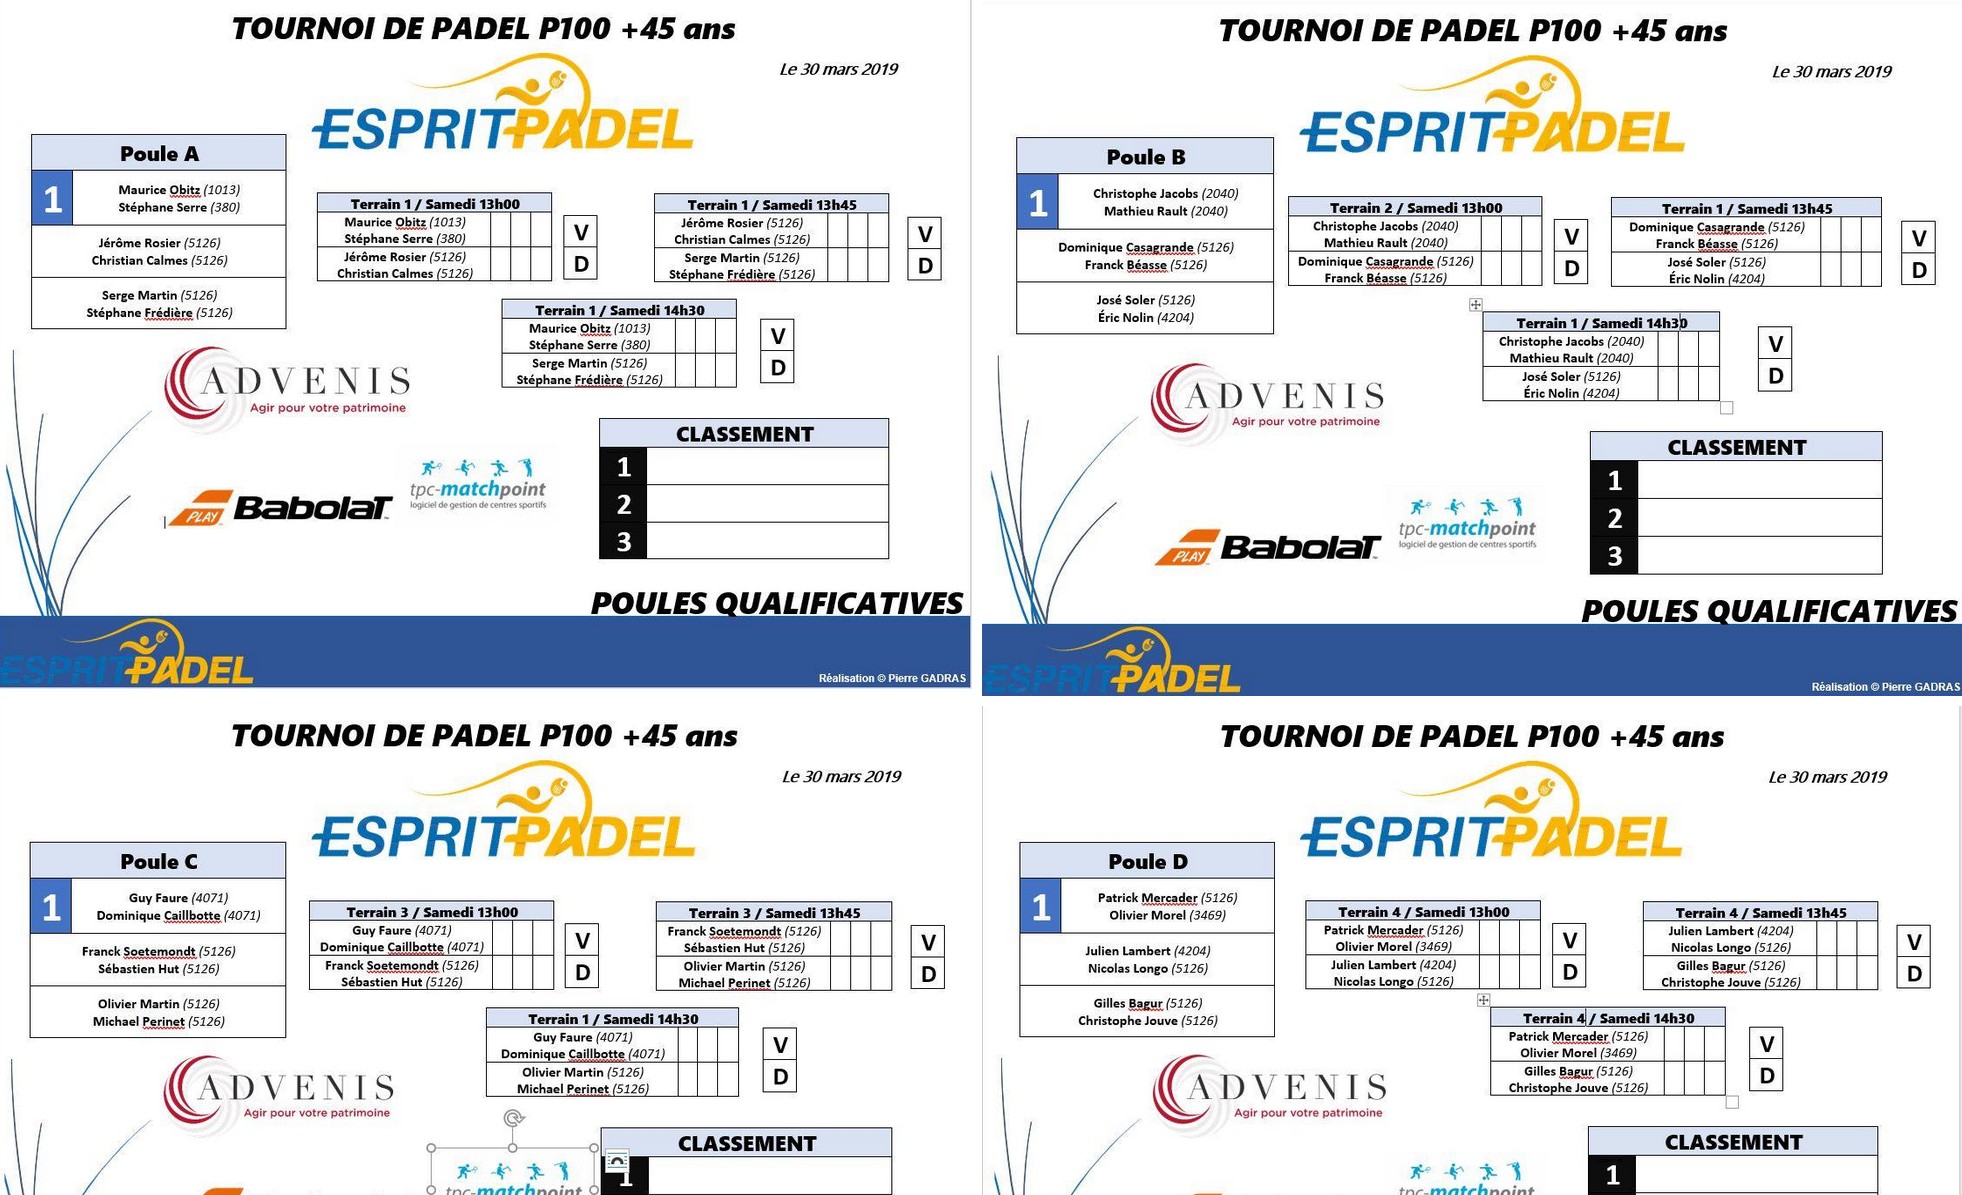 Primer torneig de Lió +1 anys a Esprit Padel